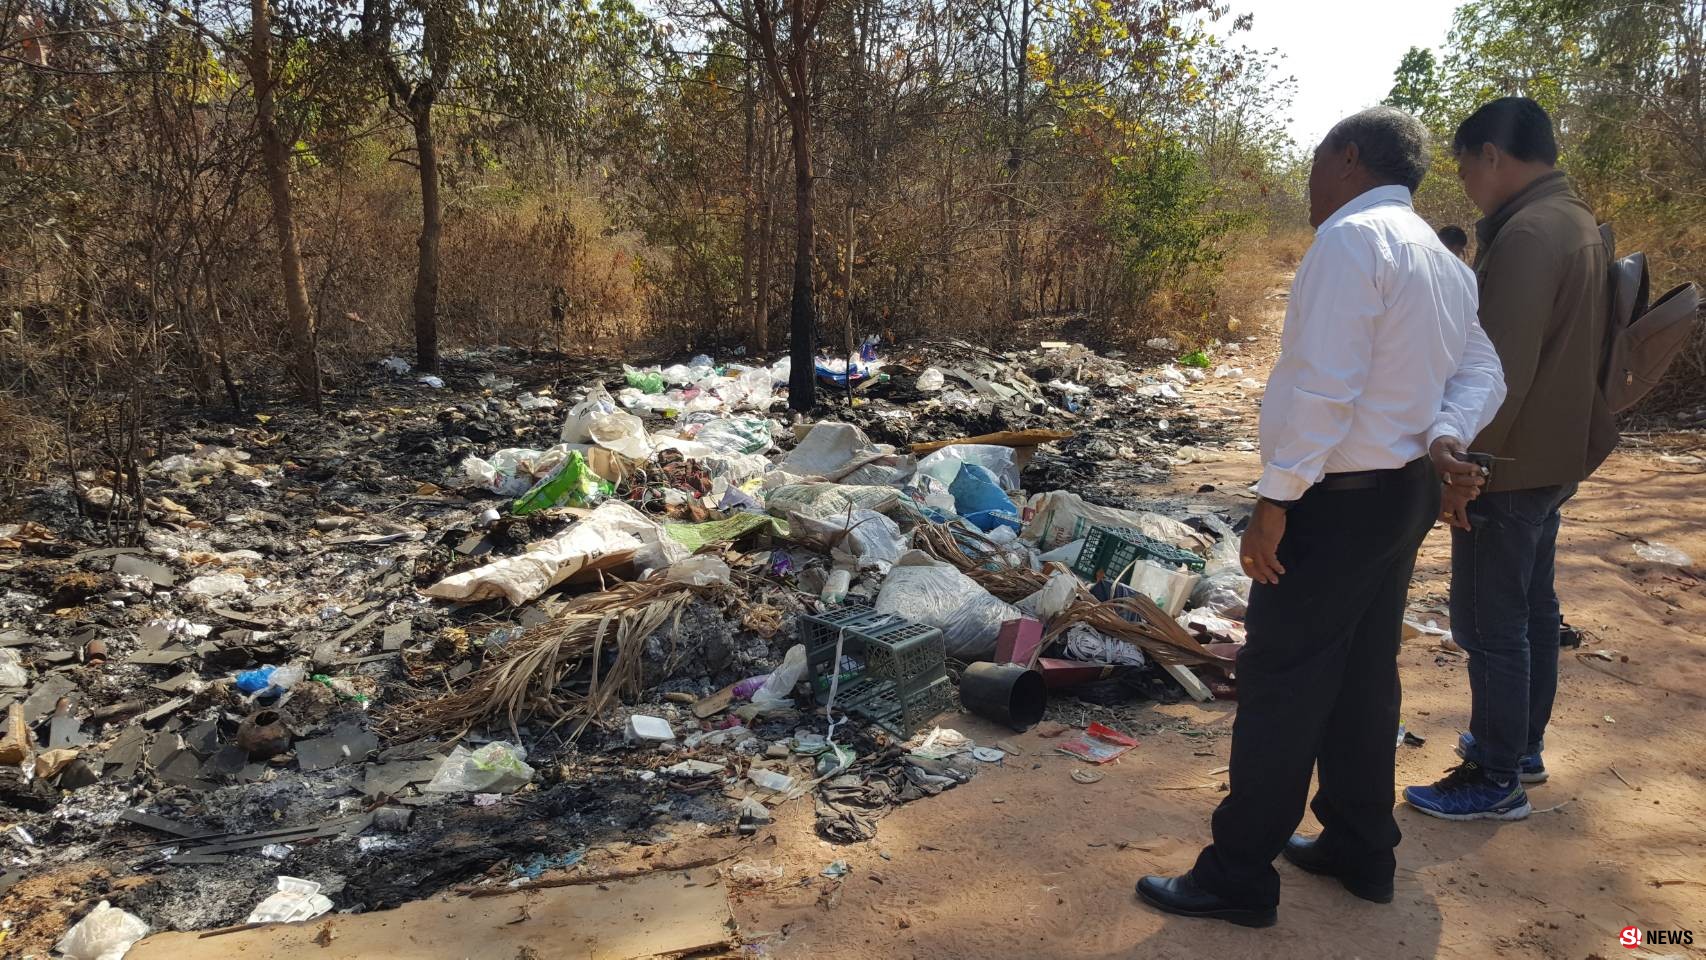 สุดมักง่าย-มือดีลอบทิ้งขยะใกล้ป่าชุมชนที่ชาวบ้านทำมาหากิน-เผยติดป้ายเตือนก็ไม่สลด